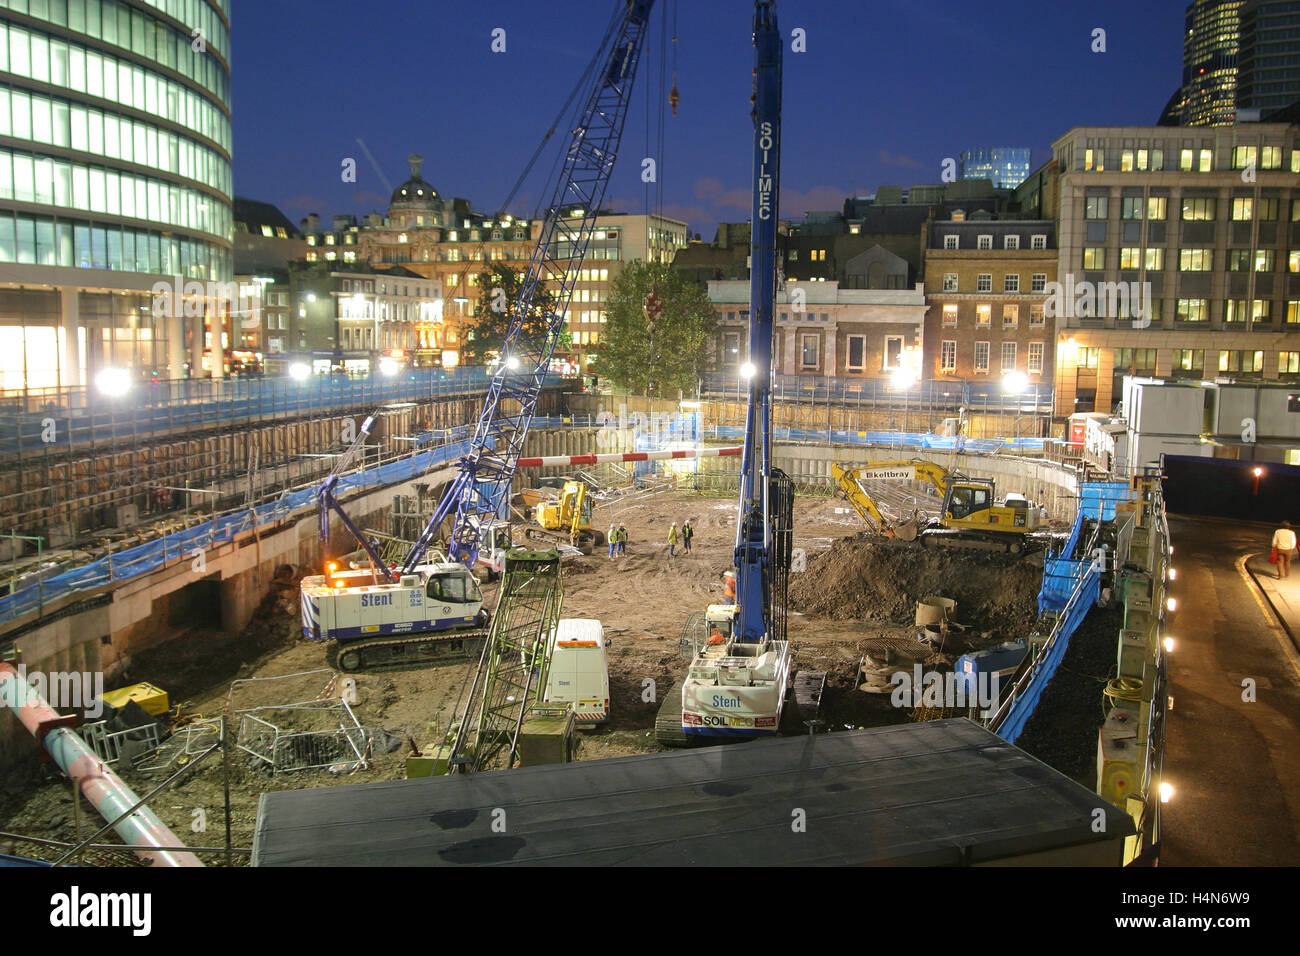 Un chantier sur mur de Londres dans la ville de Londres a photographié au crépuscule. Montre l'excavation et l'empilage travailler pour un nouveau bloc Banque D'Images